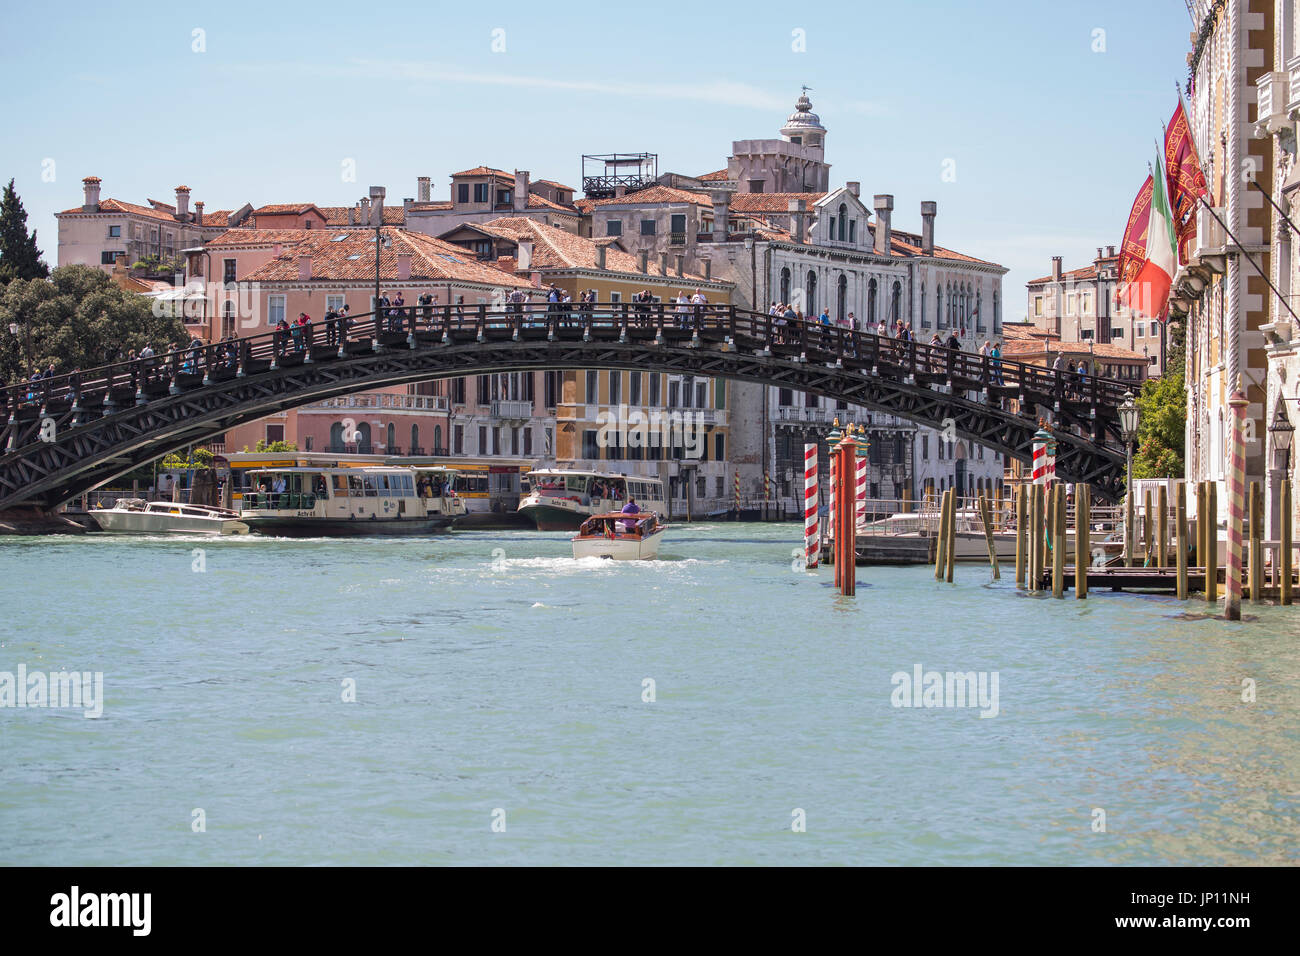 Venedig, Italien - 26. April 2012: Die Accademia-Brücke über den Canal Grande in Venedig. Zwei Vaporettos und einige Wassertaxis sind am Canal Grande. Stockfoto